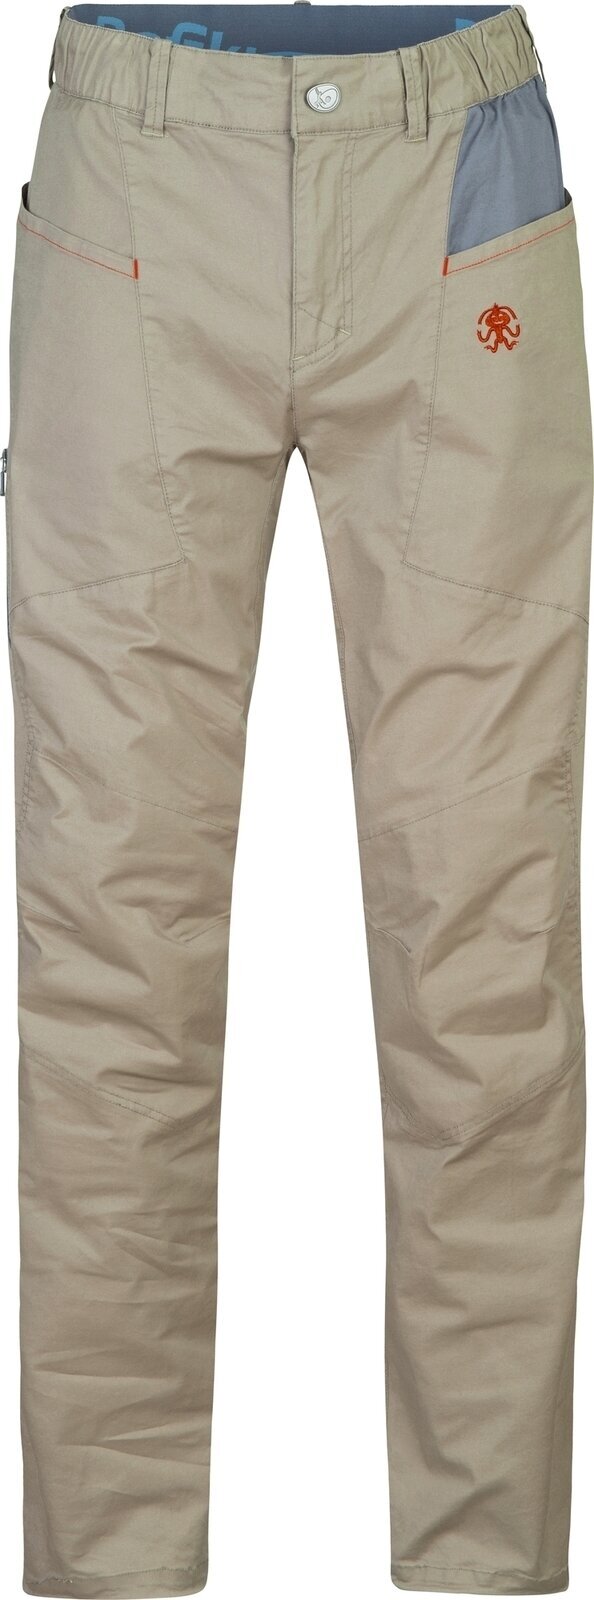 Pantalons outdoor Rafiki Crag Man Pants Brindle/Ink XL Pantalons outdoor